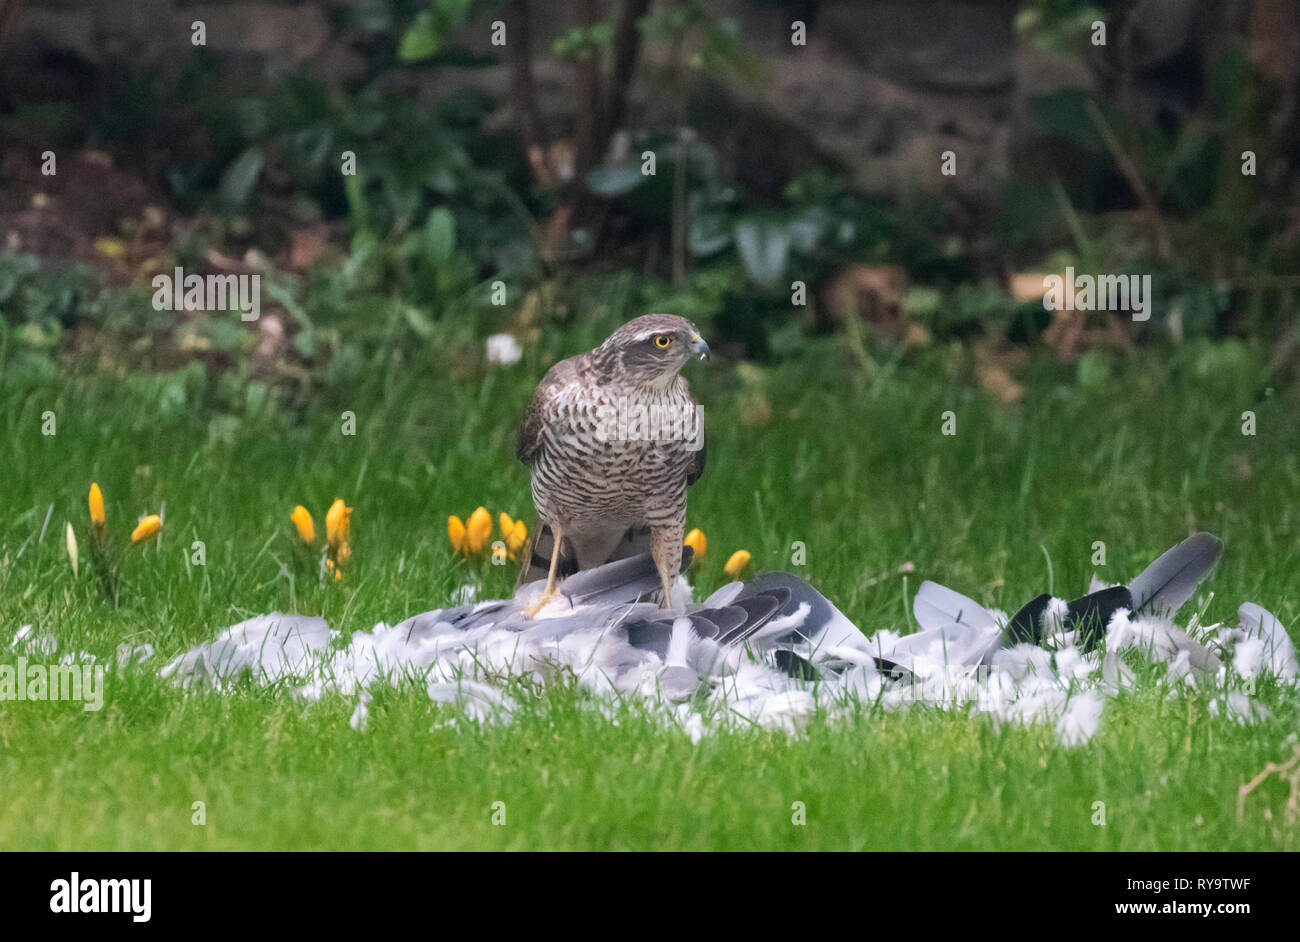 Sparrowhawk UK - a sparrowhawk feeding on a bird in a domestic garden, Suffolk UK Stock Photo